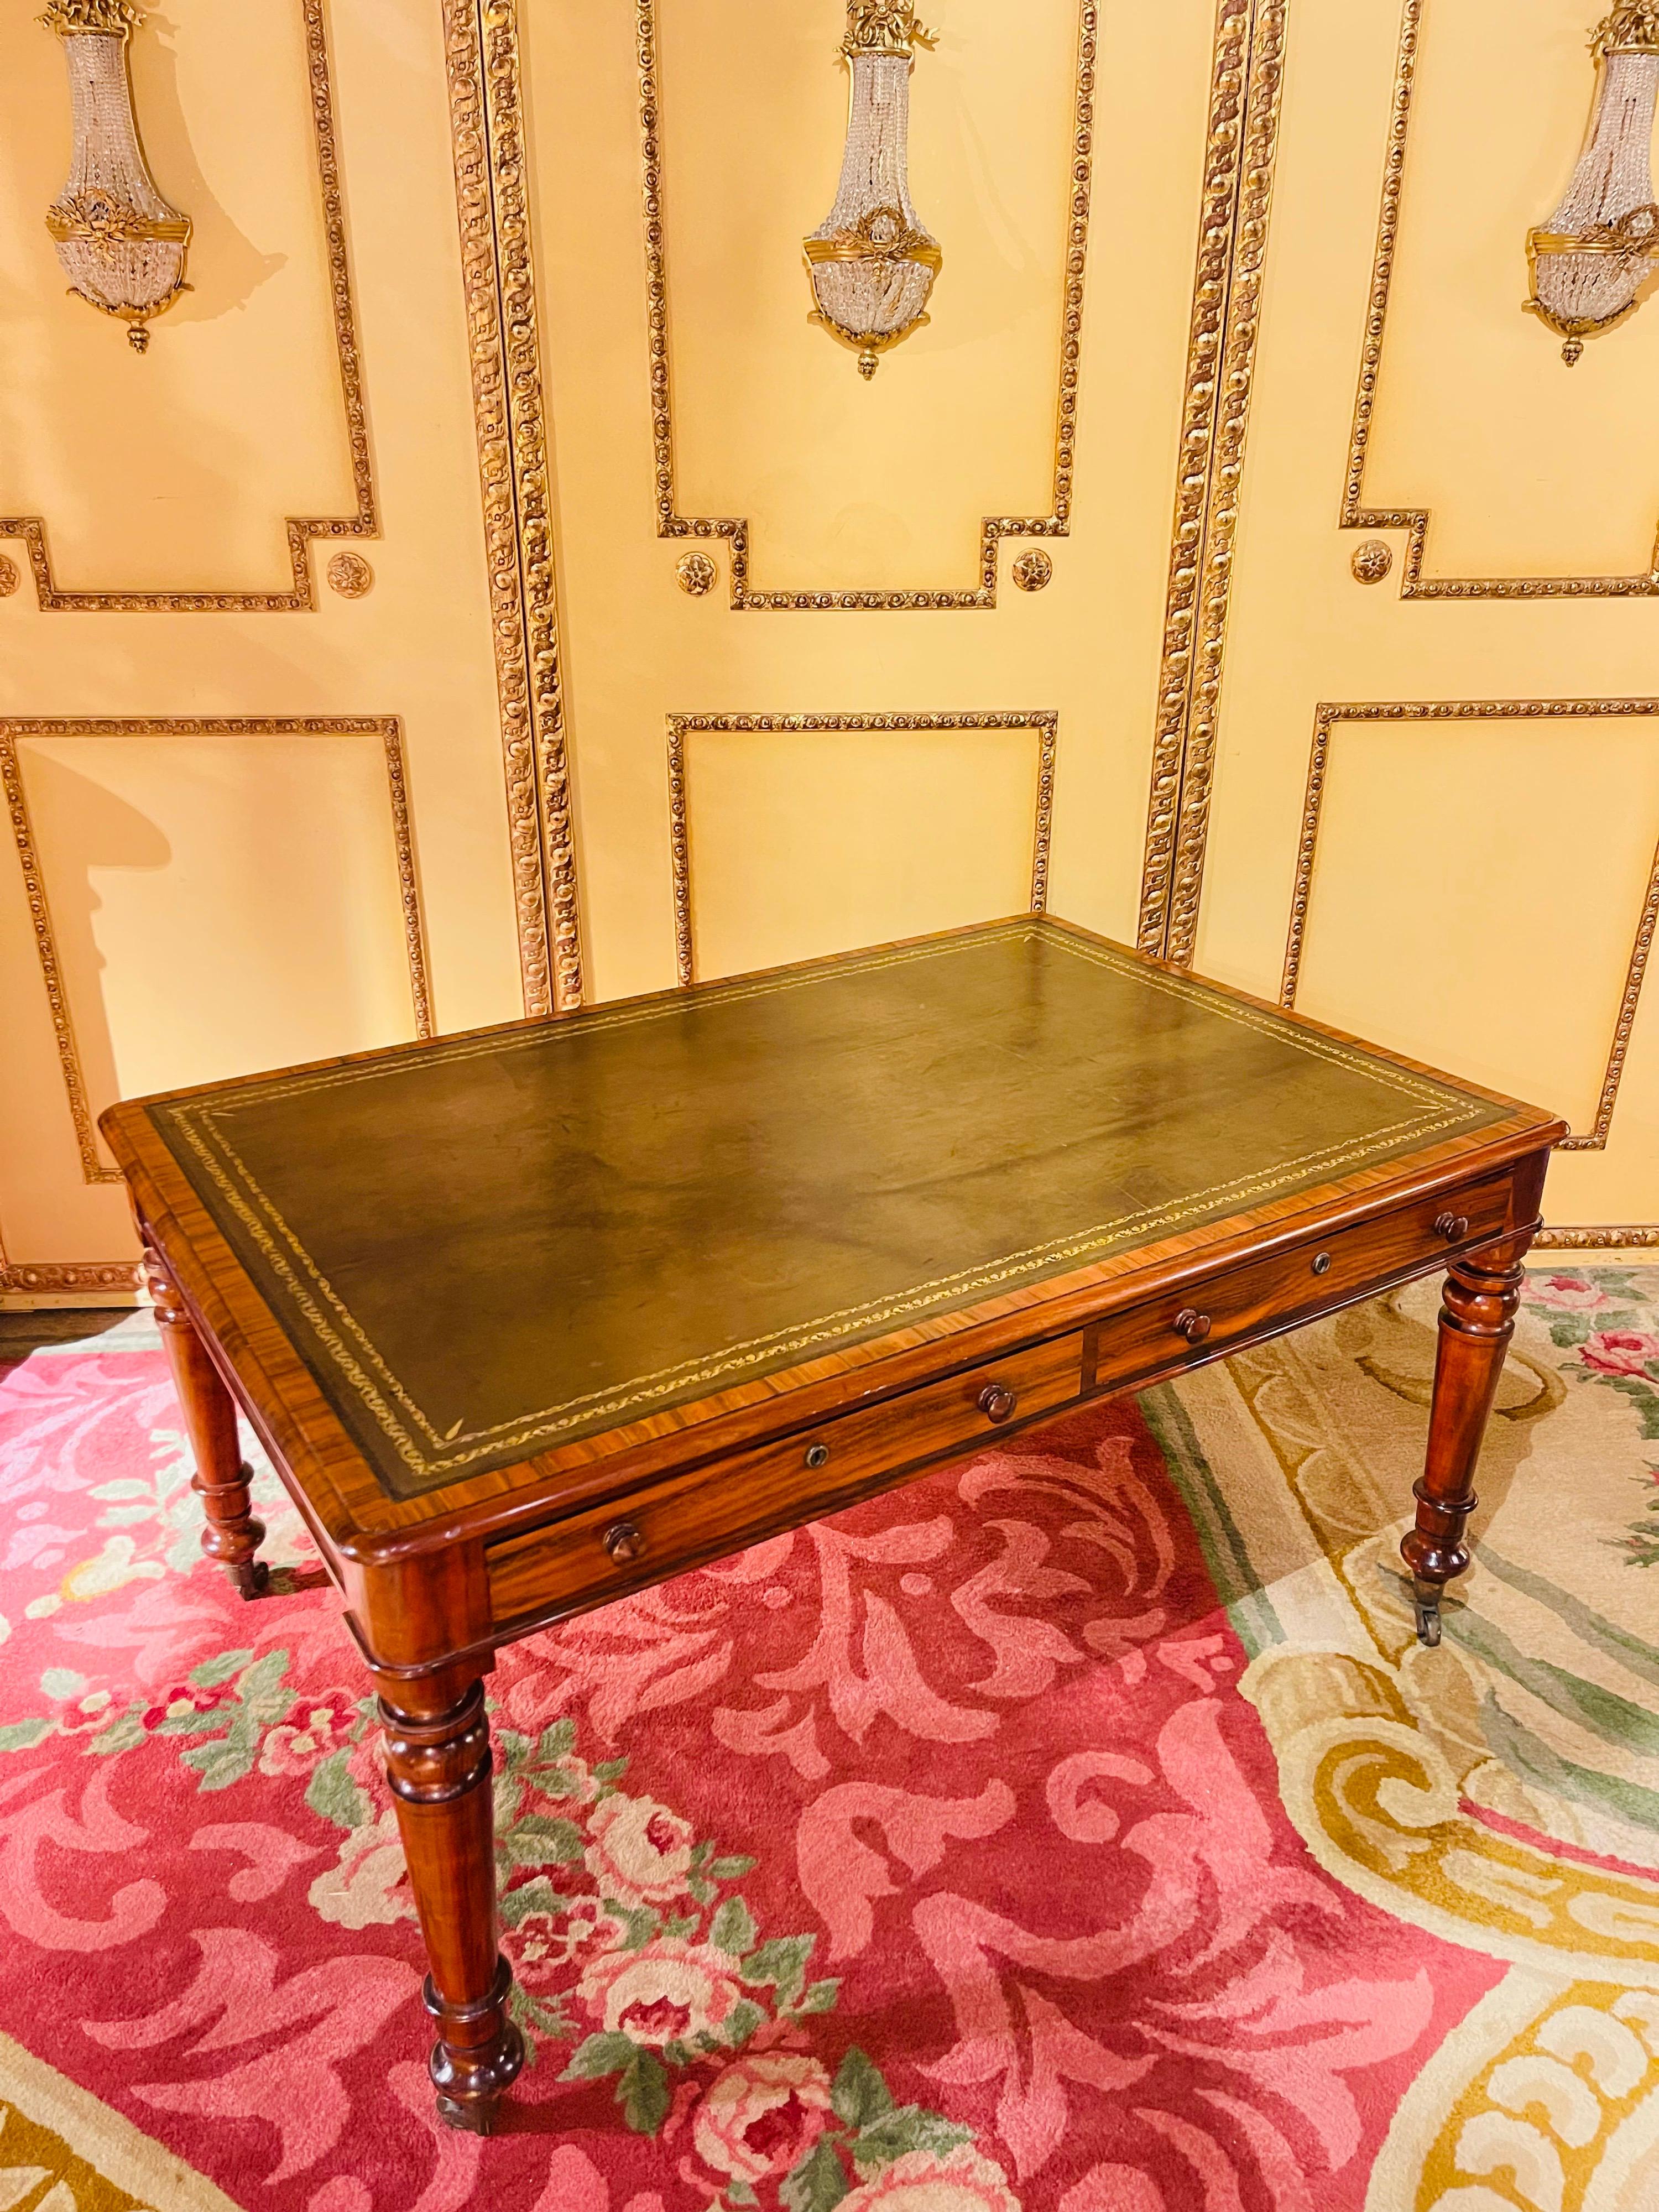 19. Jahrhundert viktorianischen englischen Partner Schreibtisch Spalte geformte Beine Schreibtisch

Säulenförmige Tischbeine. Schreibtisch mit 4 Schubladen, leicht vorstehende Tischplatte. Schreibfläche mit außergewöhnlicher Goldprägung.